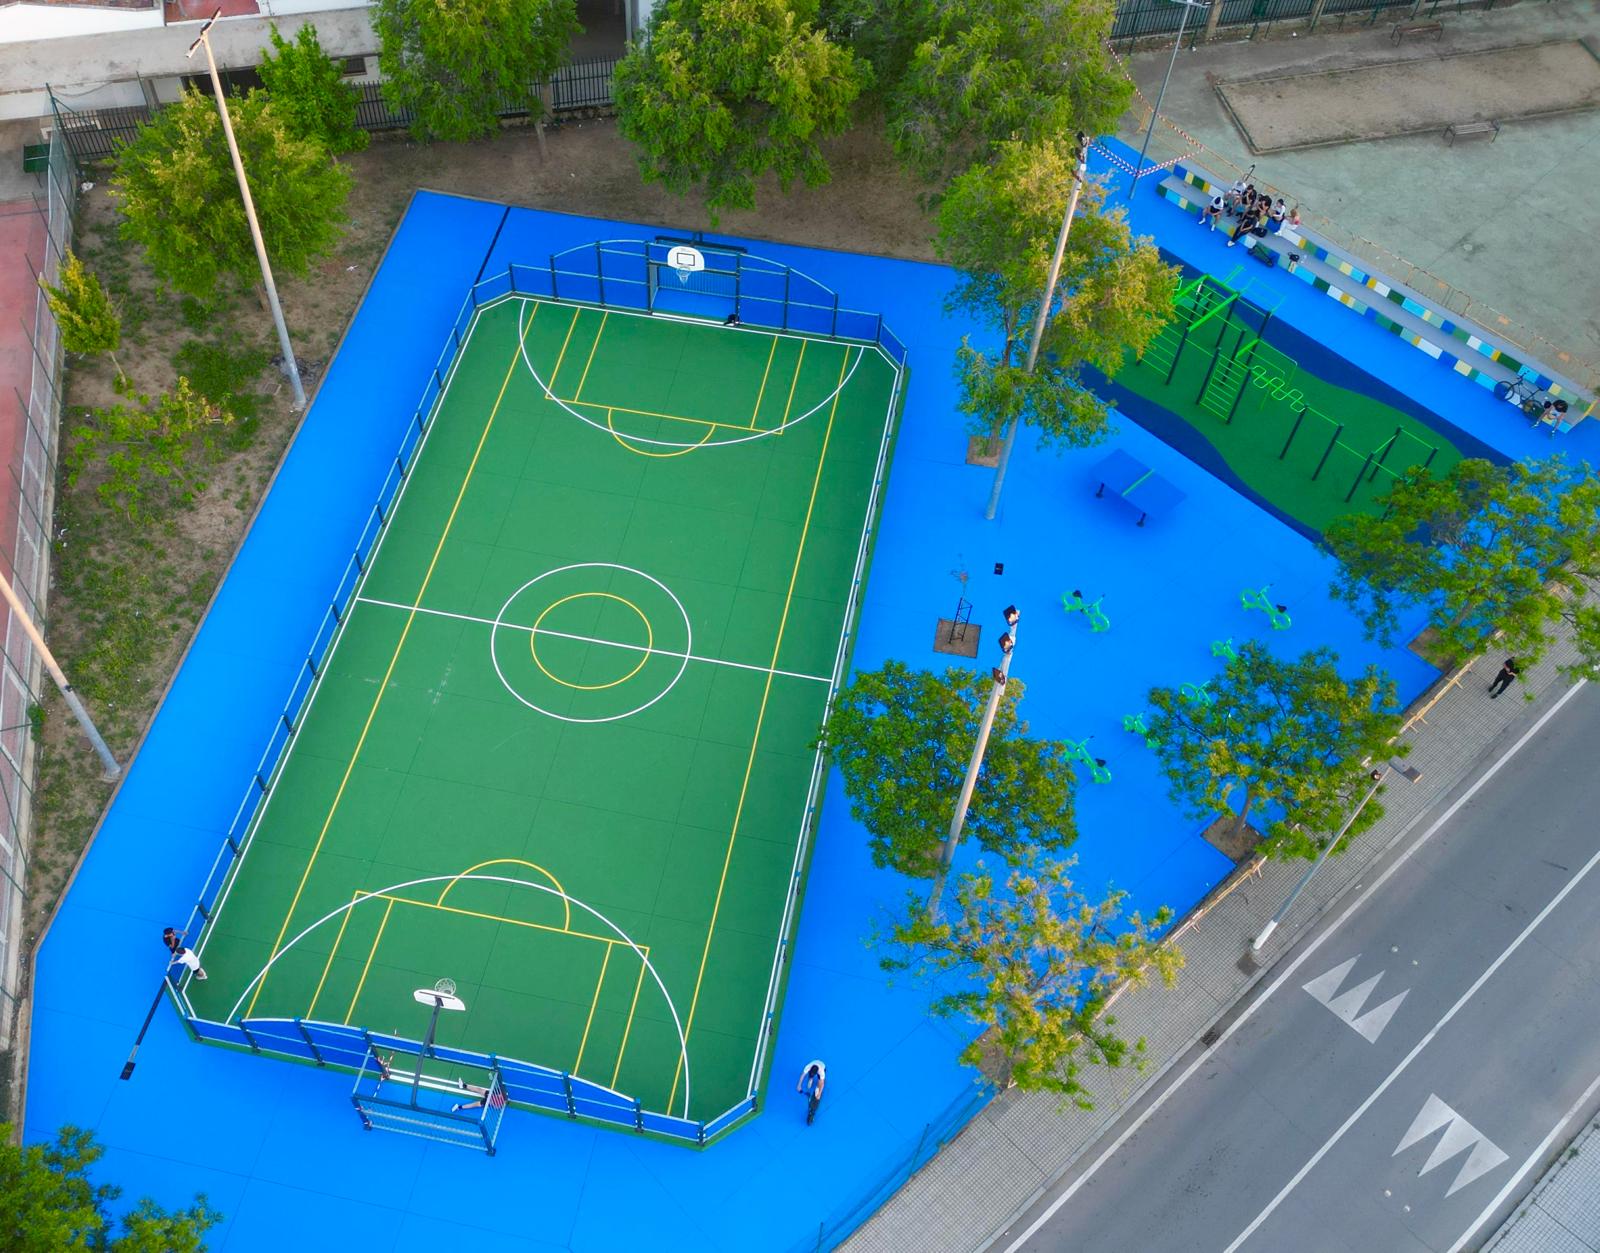 Nuevo espacio multideportivo en Pozoblanco promueve hábitos saludables y ofrece opciones de ocio para todas las edades